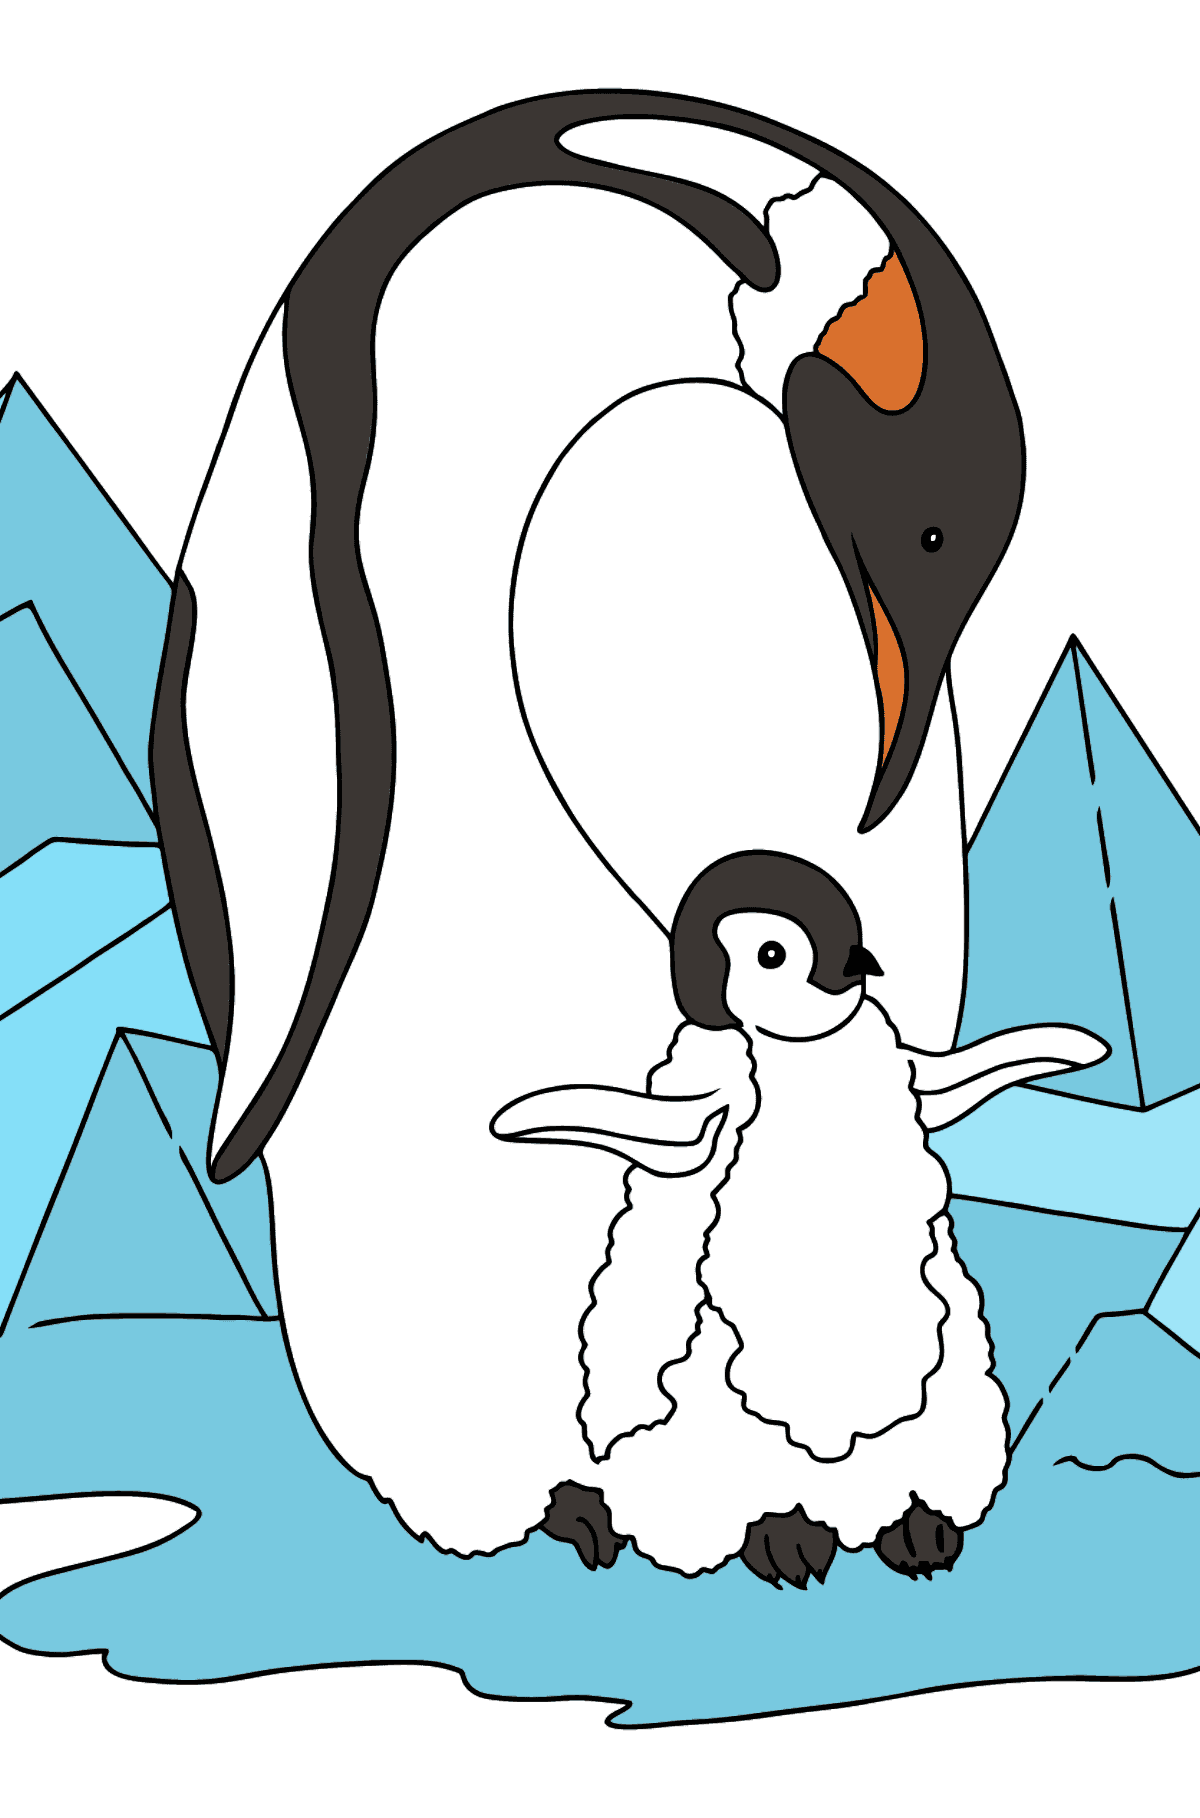 Kleurplaat pinguïn voor kinderen - kleurplaten voor kinderen